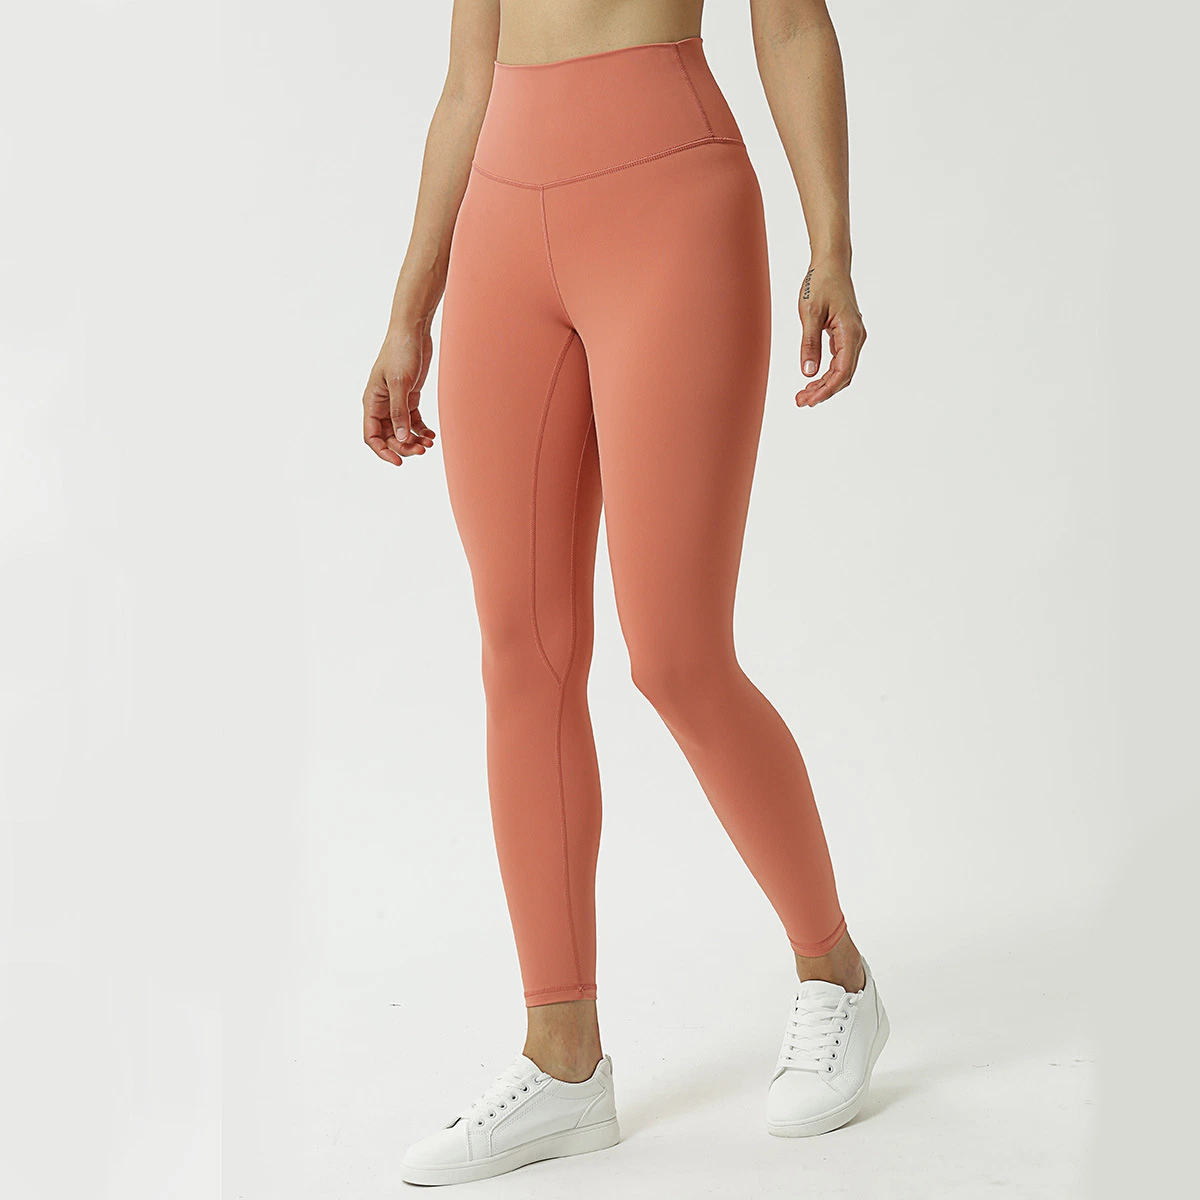 OEM Factory Gym Одежда Yoga Брюки для женщин Спортивная одежда